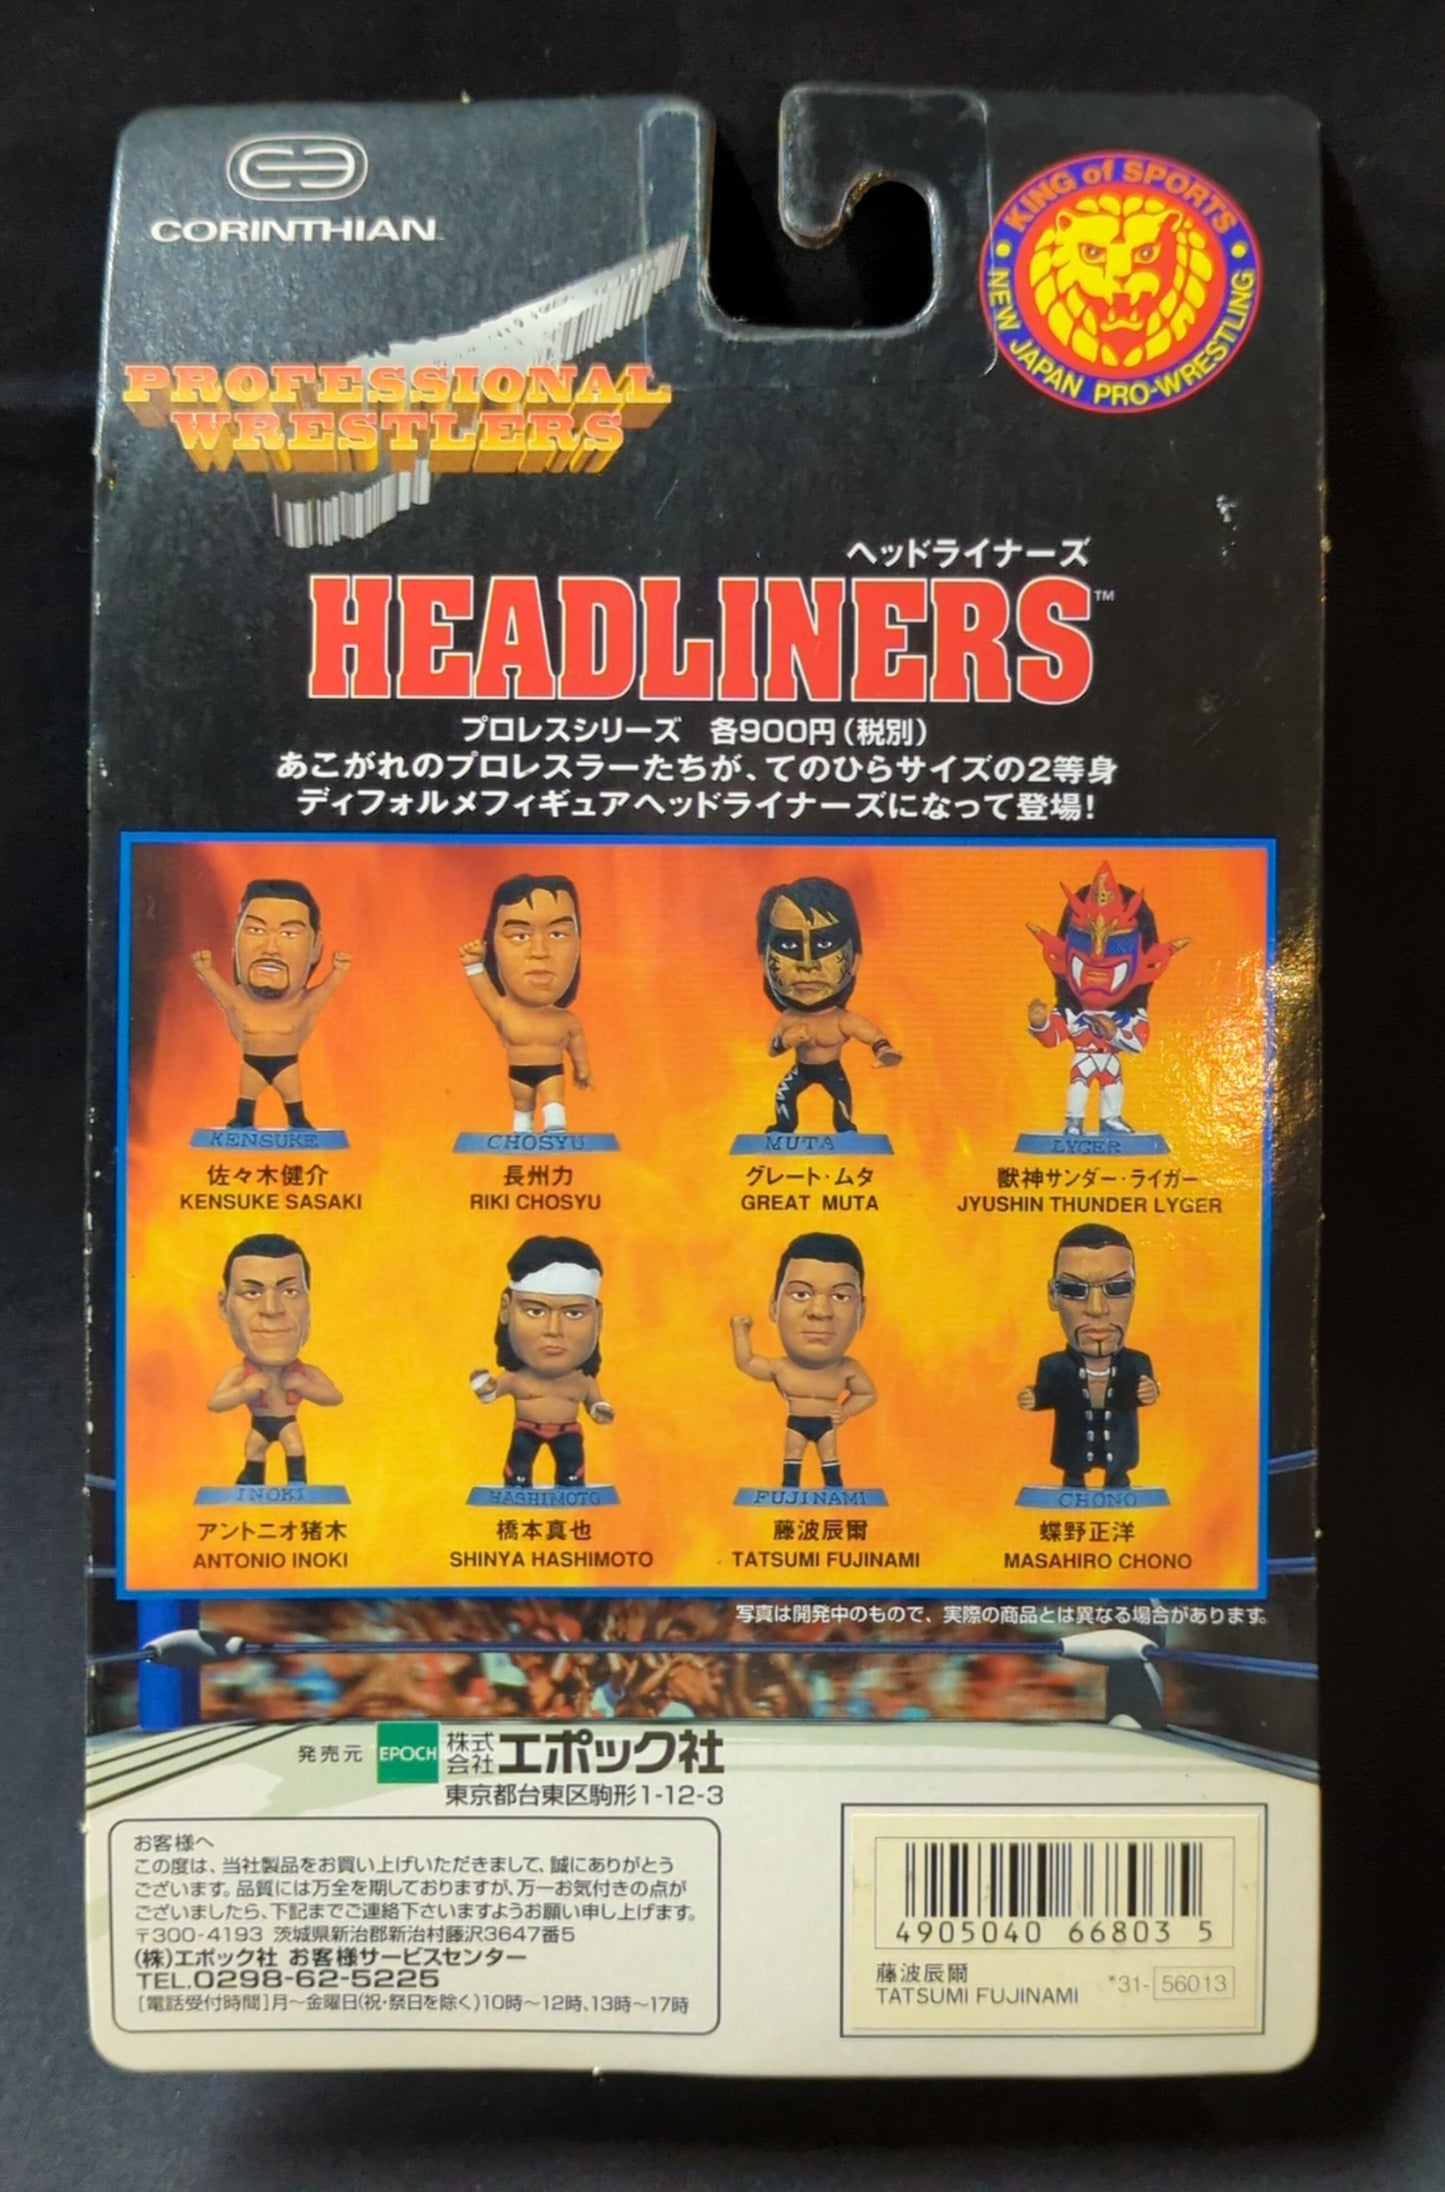 1998 NJPW Epoch Professional Wrestlers Headliners Tatsumi Fujinami